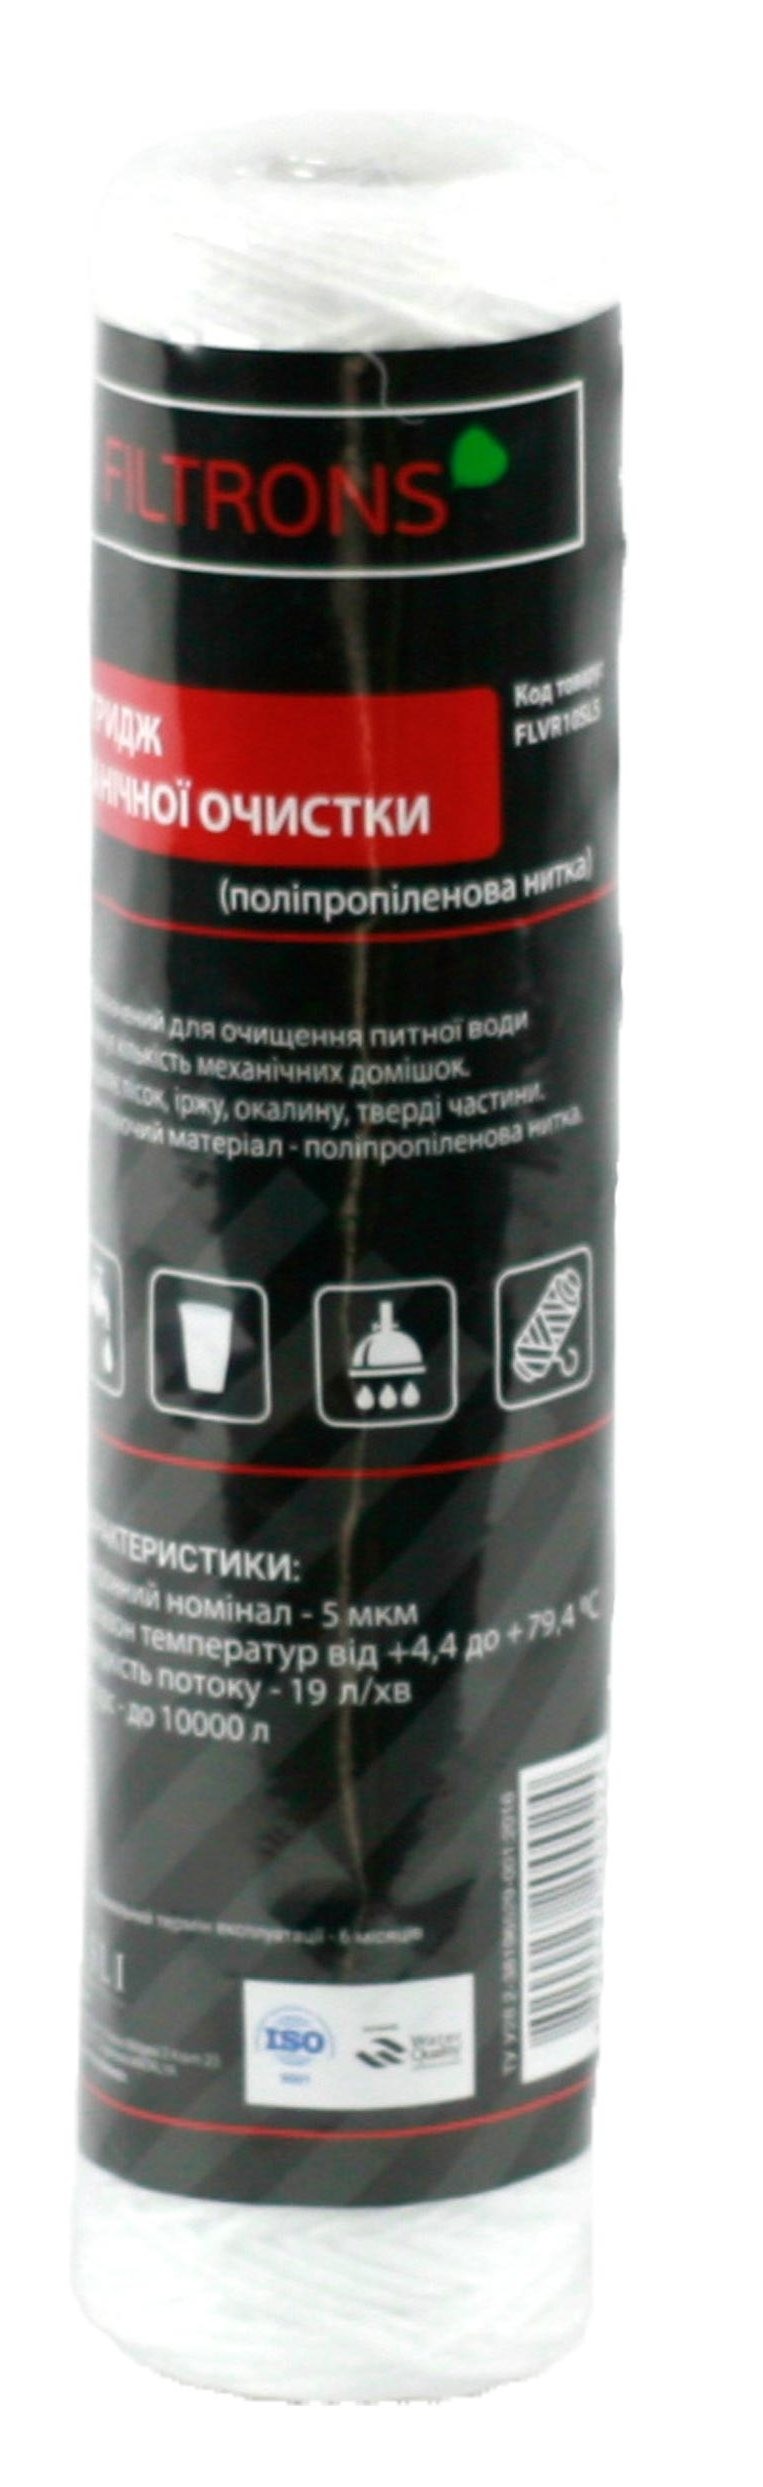 Купить картридж для фильтра Filtrons 10' SLIM 20 мкм (FLVR10SL20) в Киеве